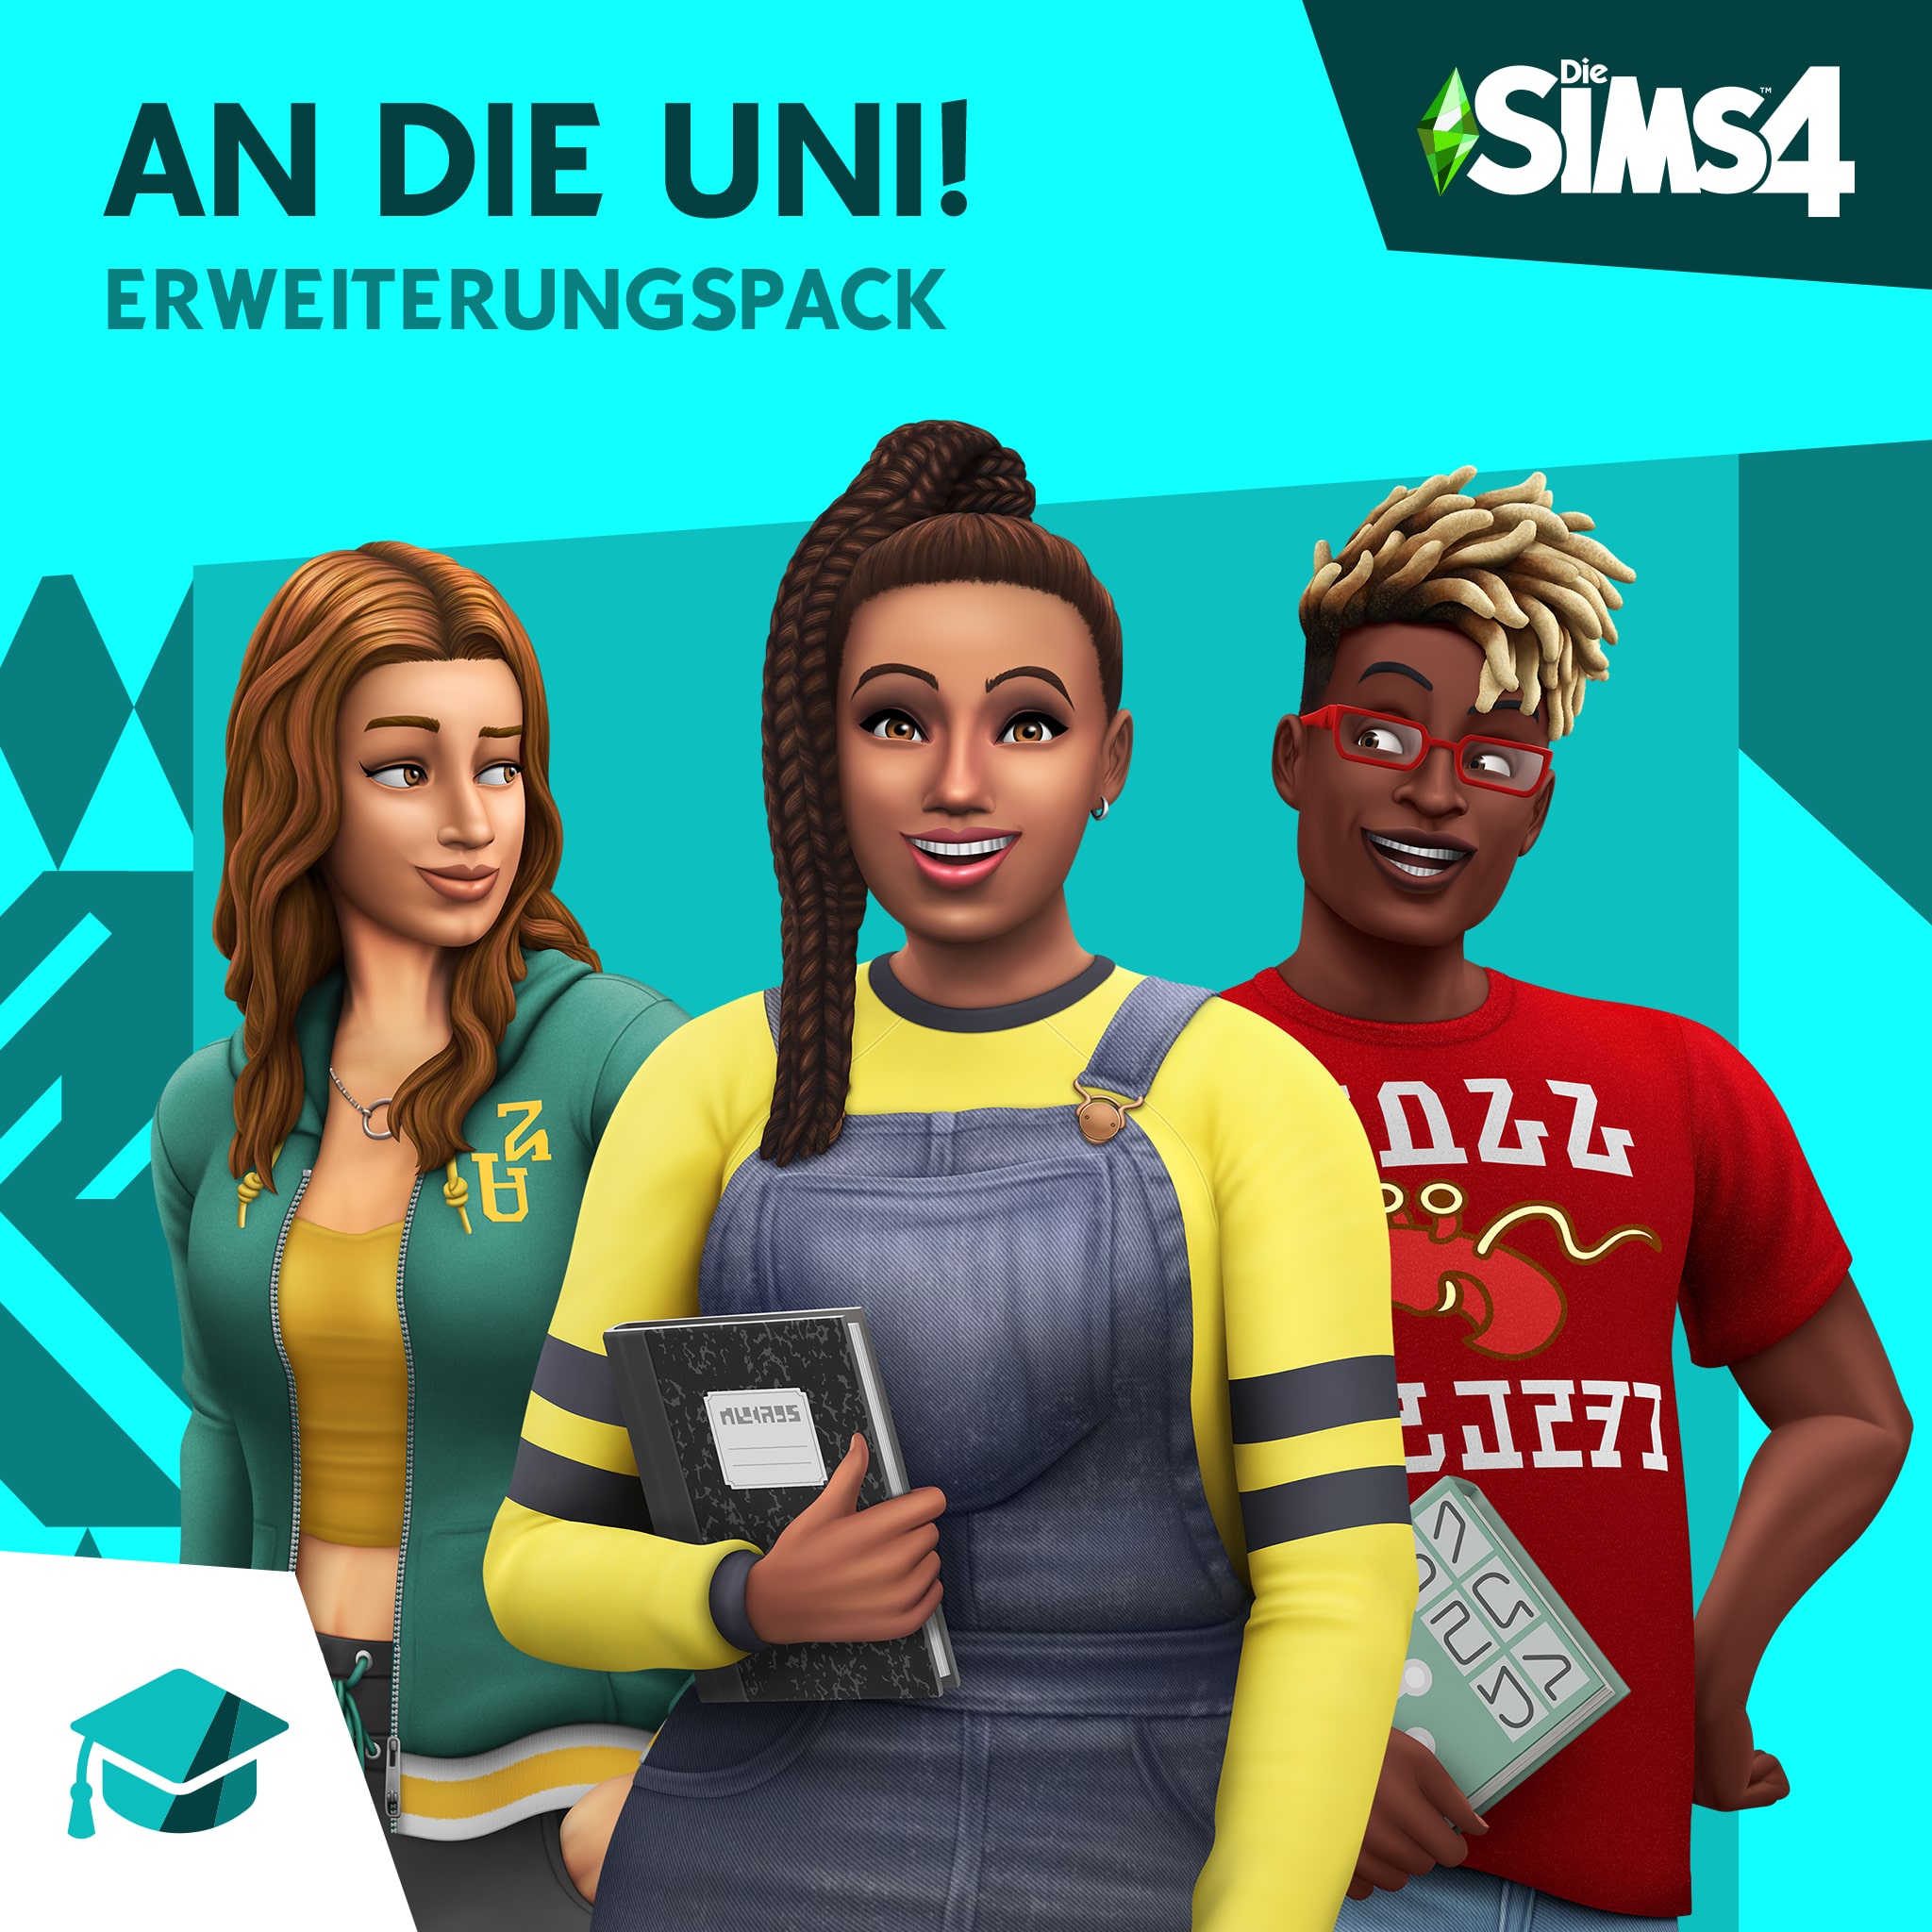 Die Sims™ 4 An die Uni!